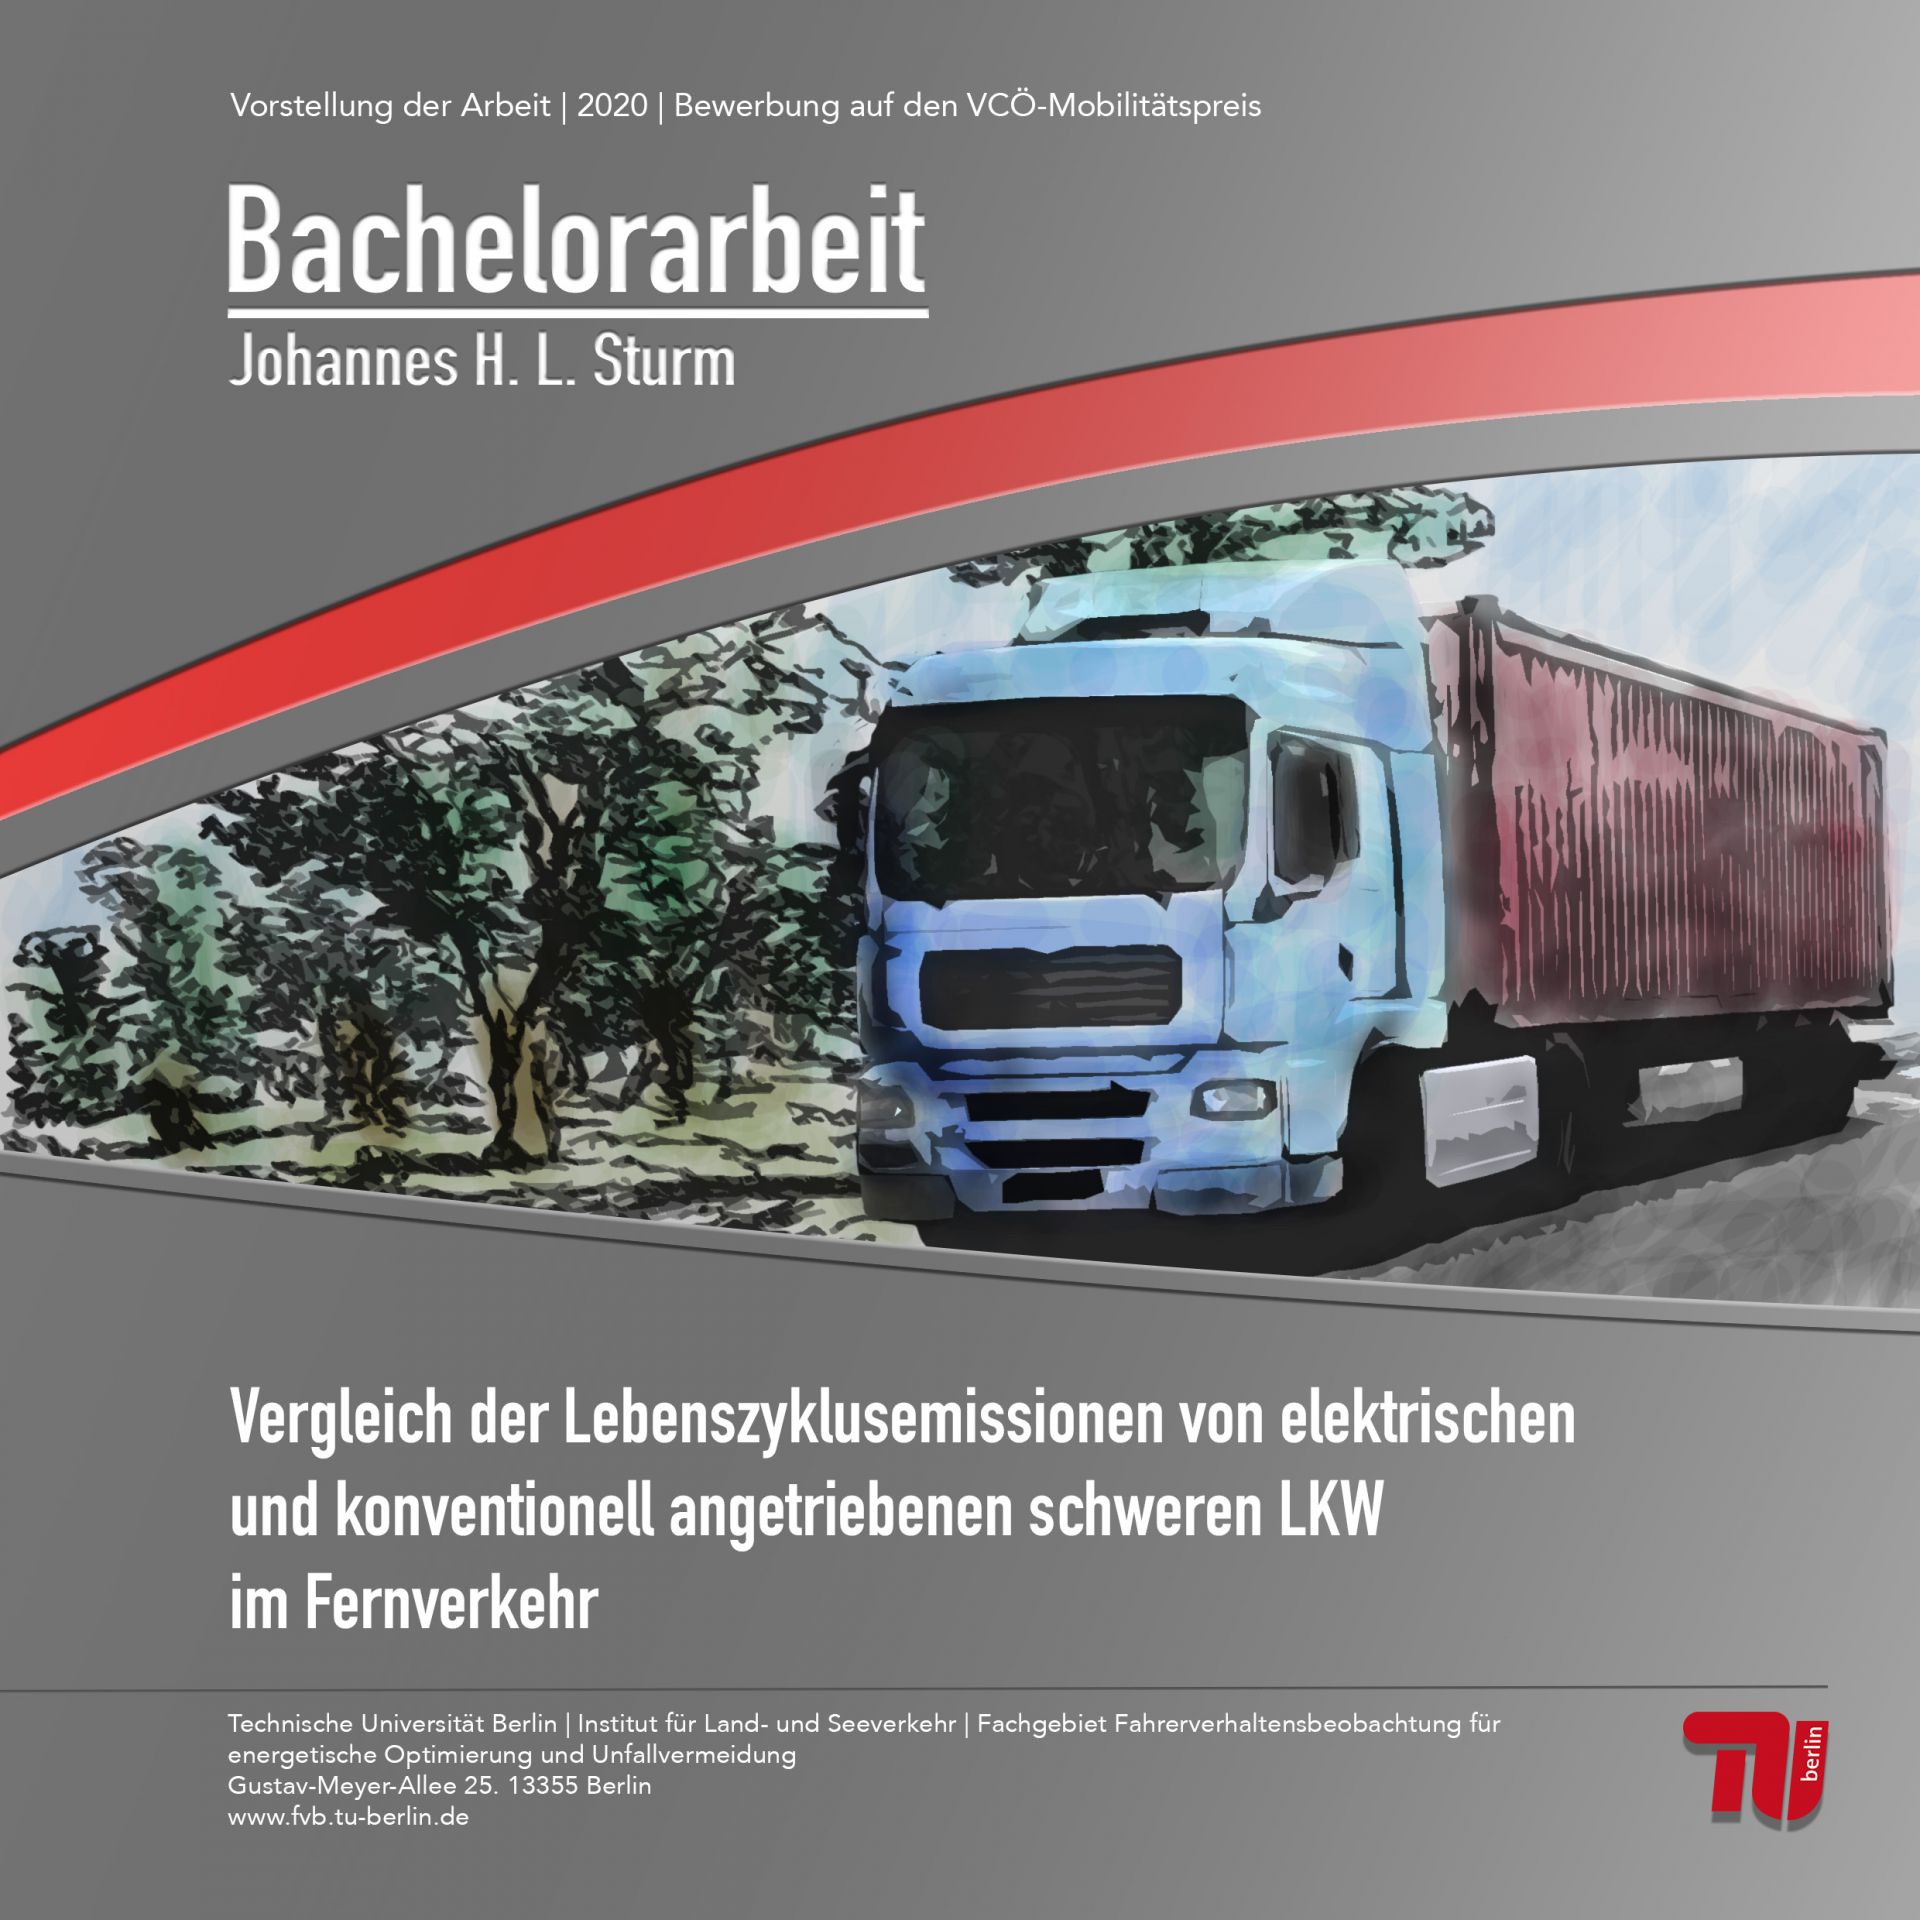 Vergleich der Lebenszyklusemissionen von batterieelektrischen und konventionell angetriebenen schweren LKW im Fernverkehr